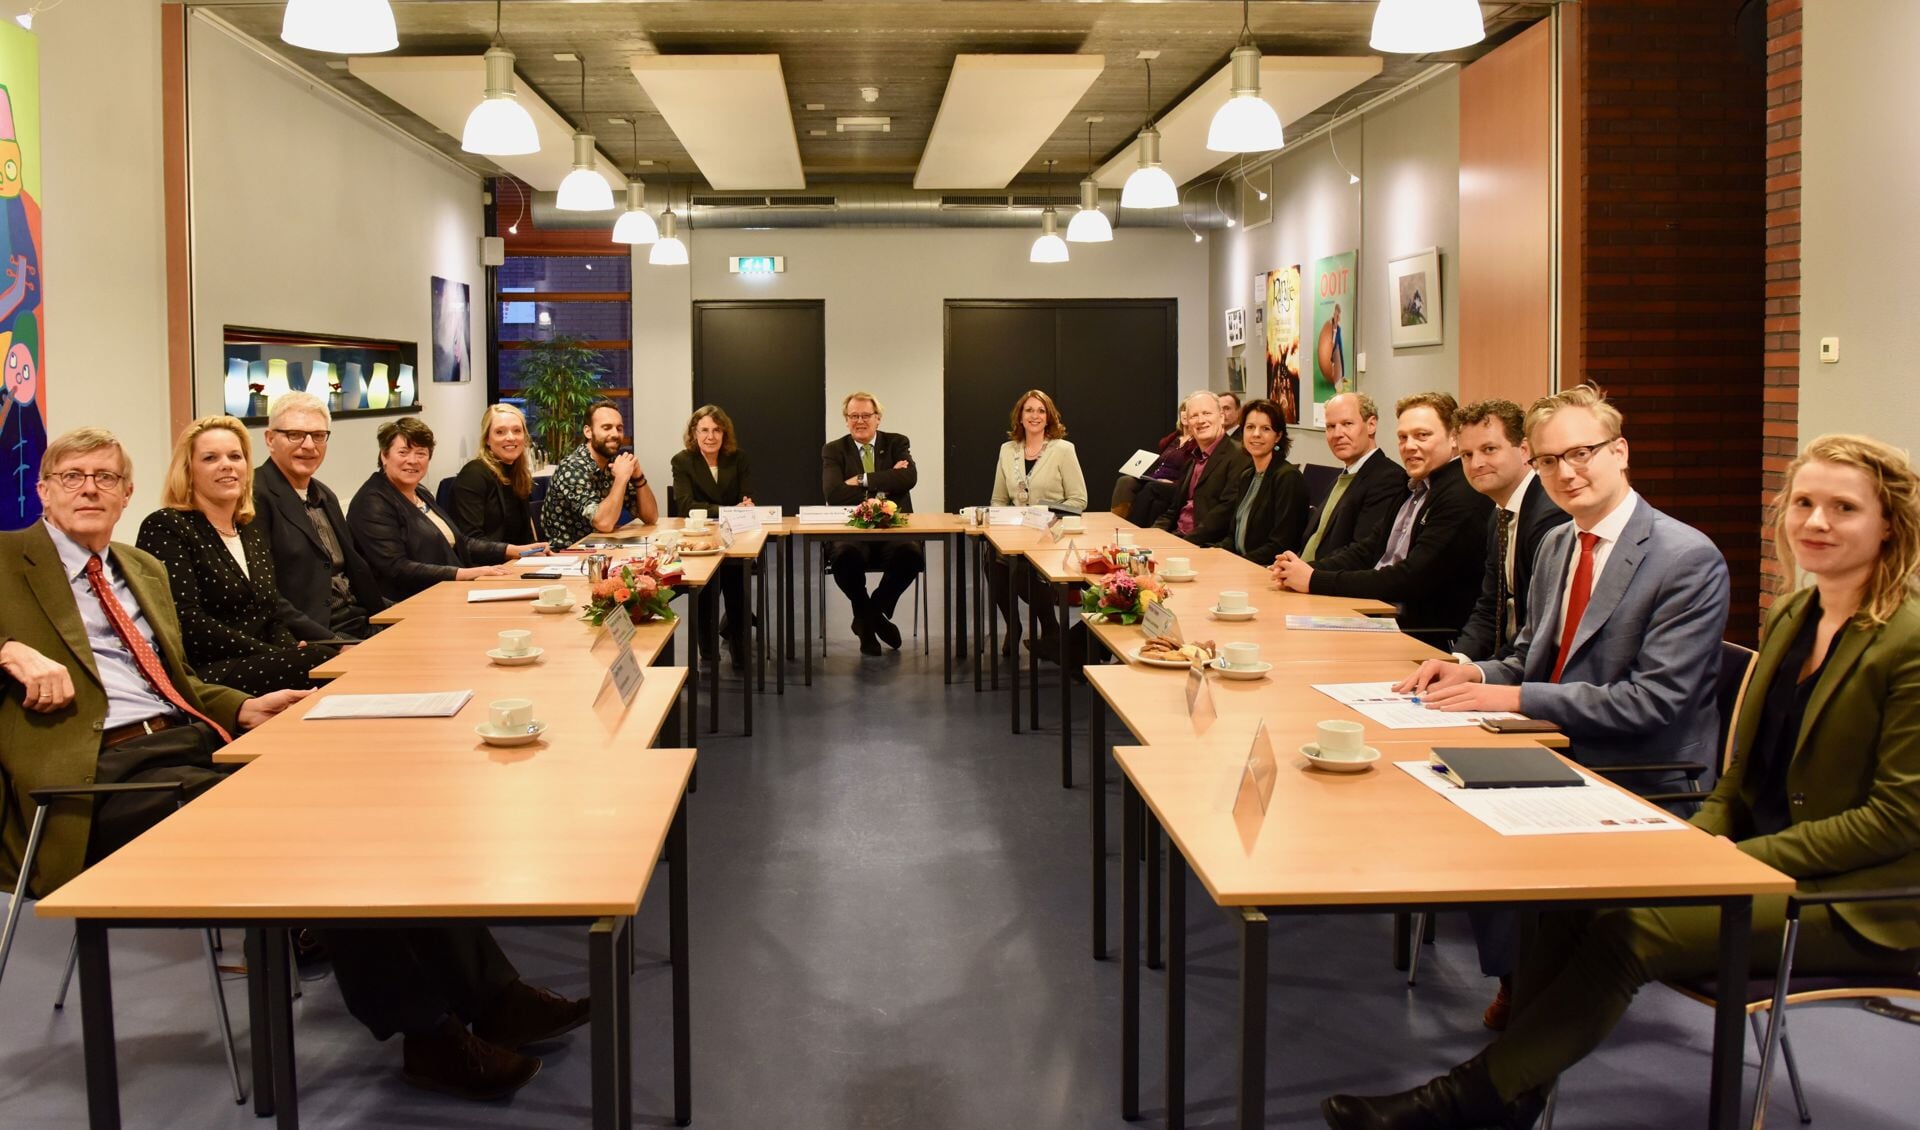 Commissaris van de Koning Jaap Smit in gesprek met vertegenwoordigers van politieke partijen, organisaties, verenigingen en bedrijven uit Teylingen. | Foto: pr.